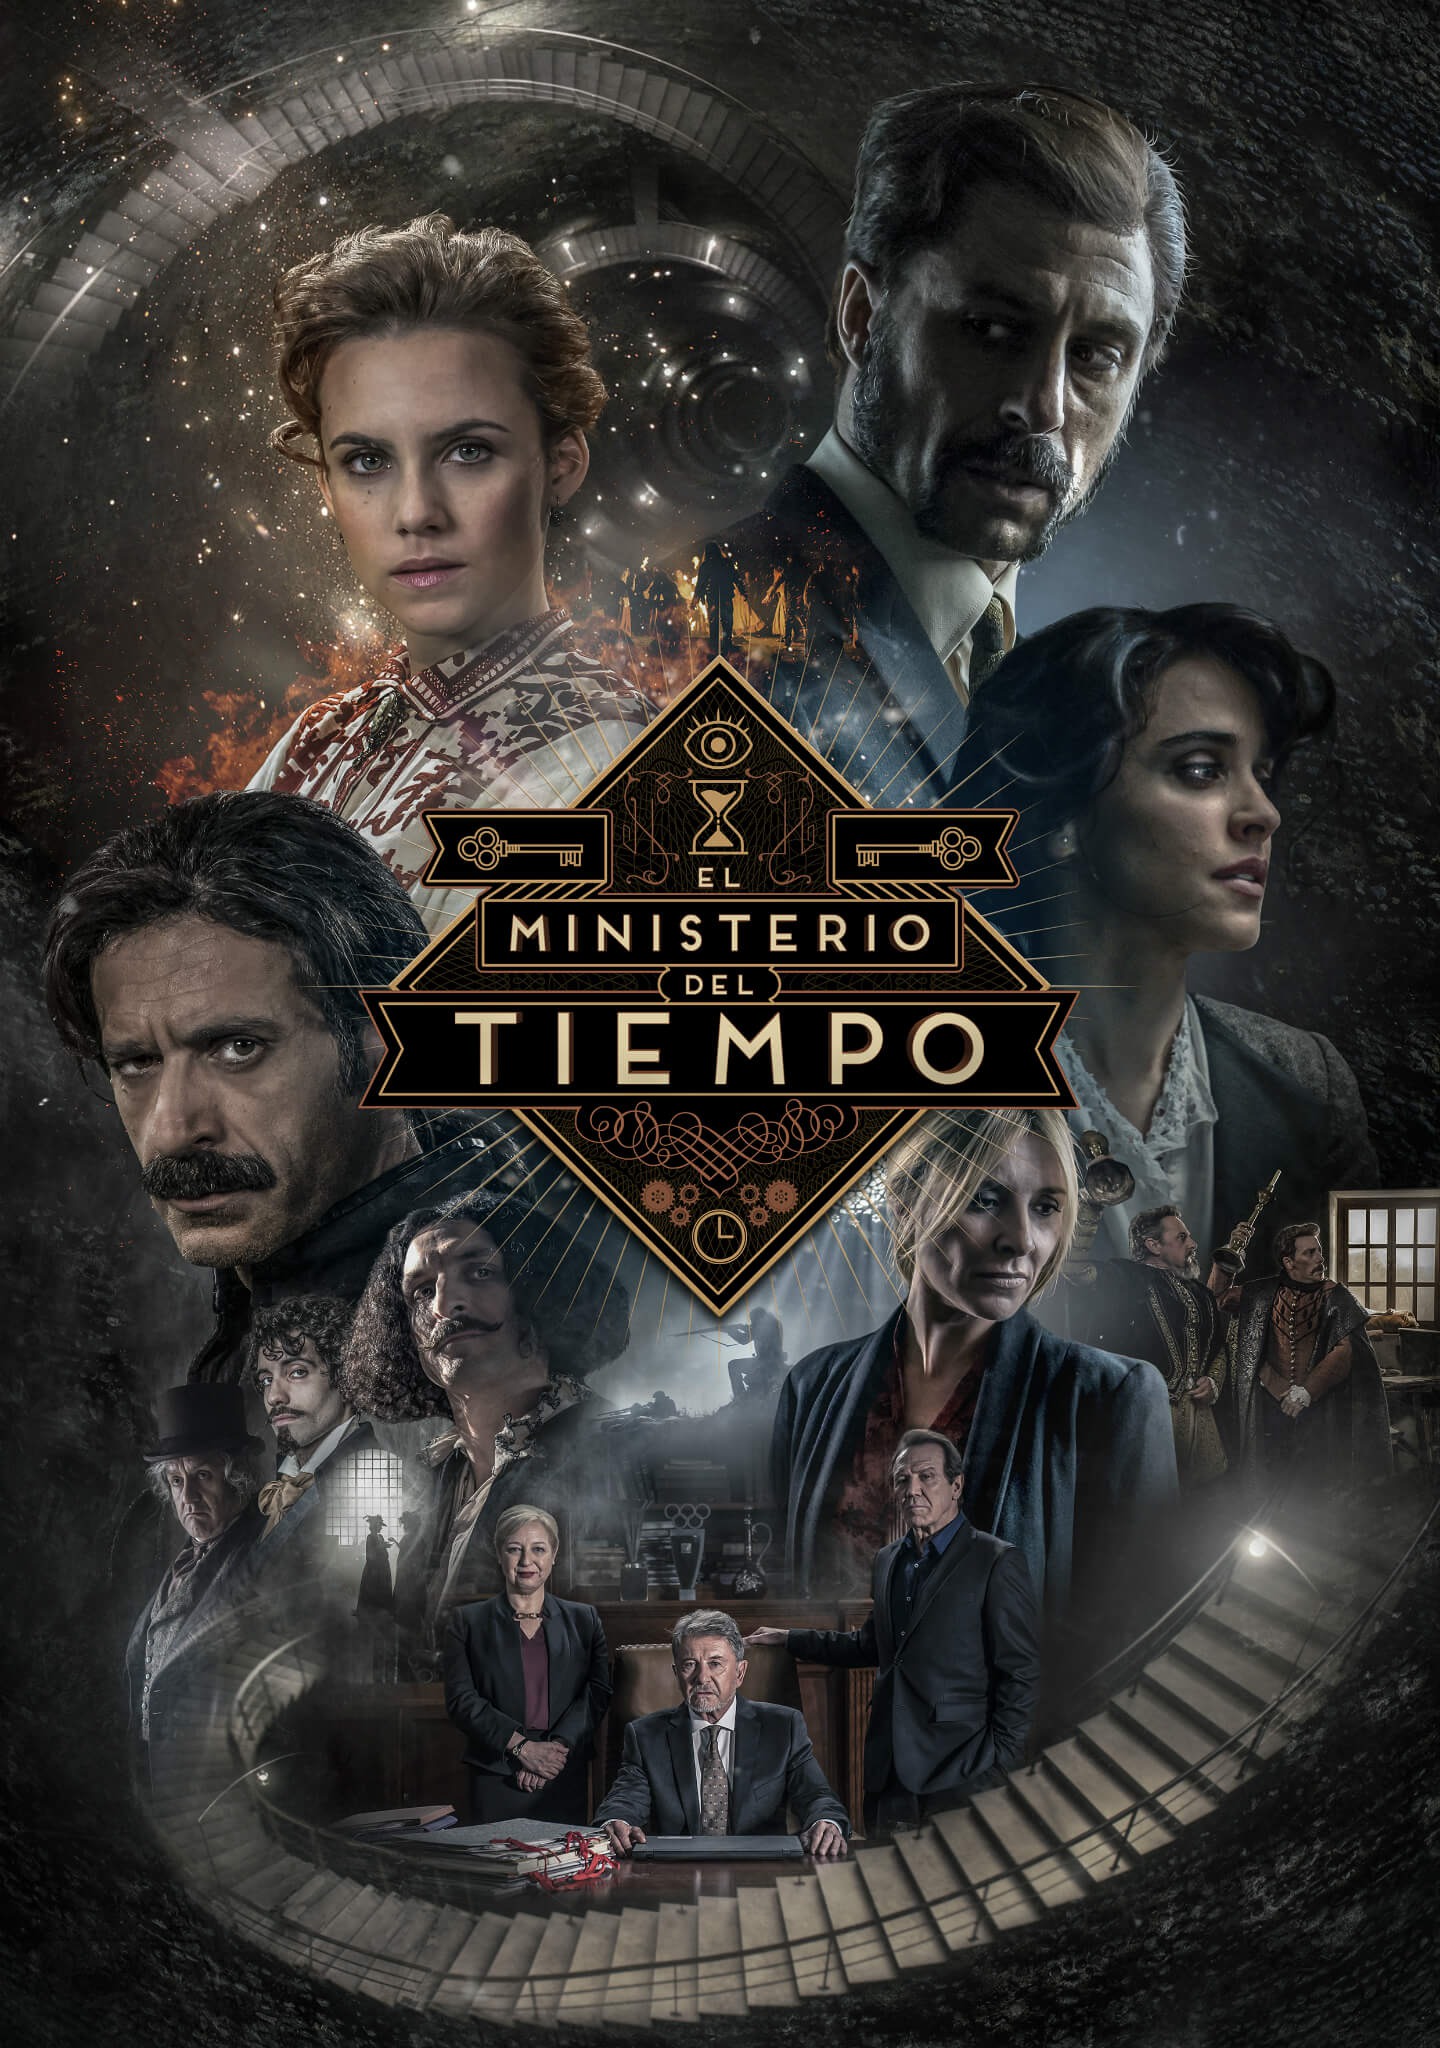 Mega Sized TV Poster Image for El ministerio del tiempo (#1 of 2)